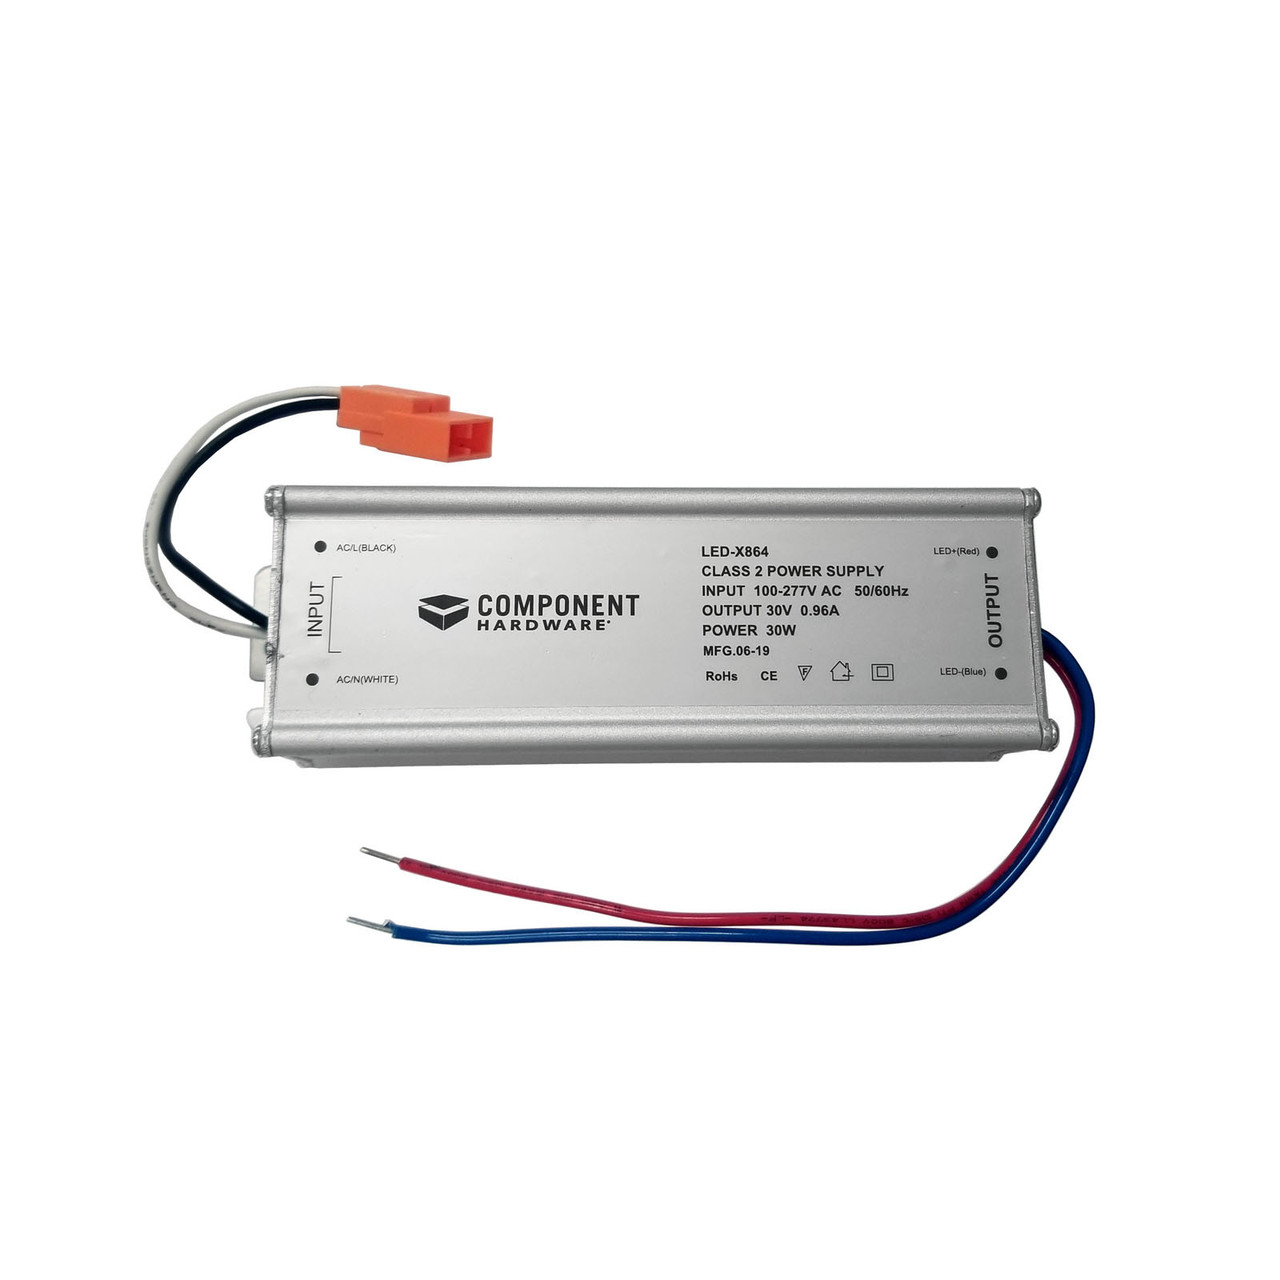 Schaar alarm pot LED DRIVER (LED-X864) - Vent Fab